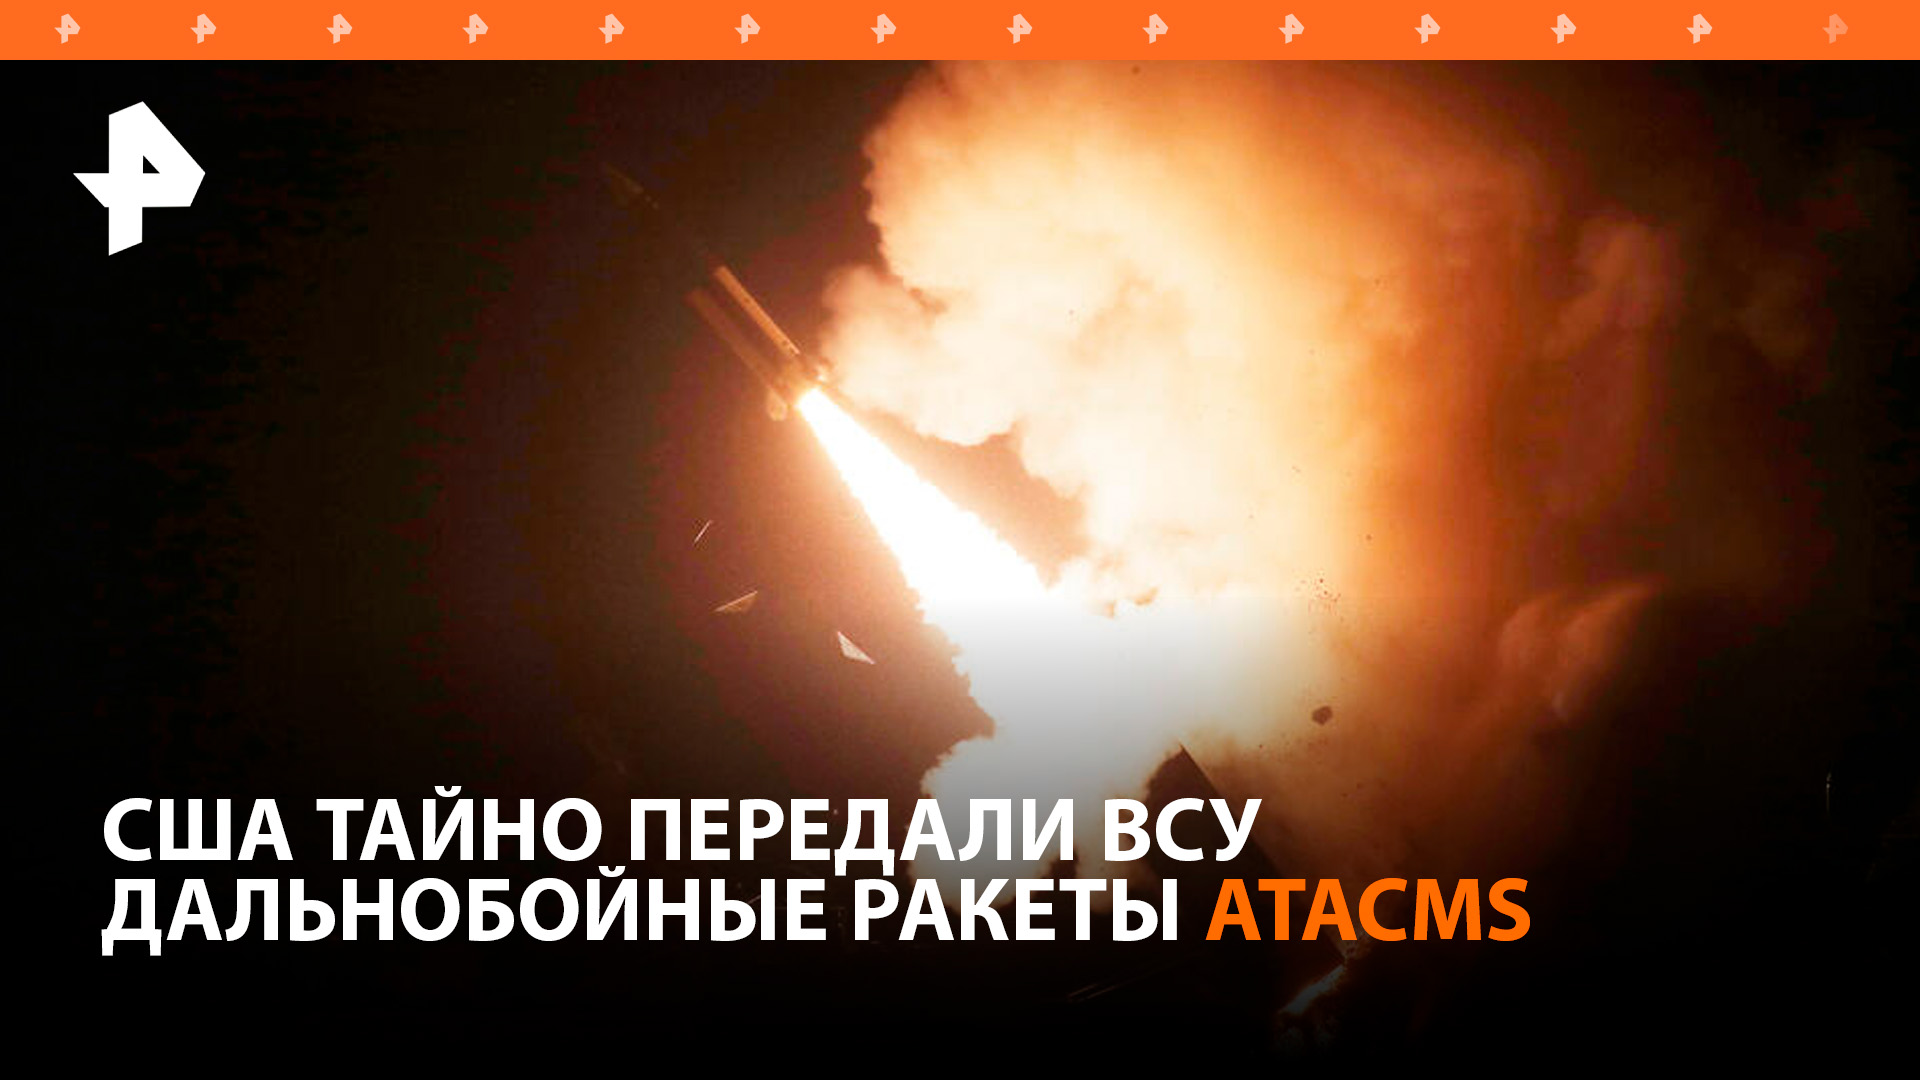 США тайно передали Киеву ракеты ATACMS, ВСУ дважды их использовали / РЕН Новости